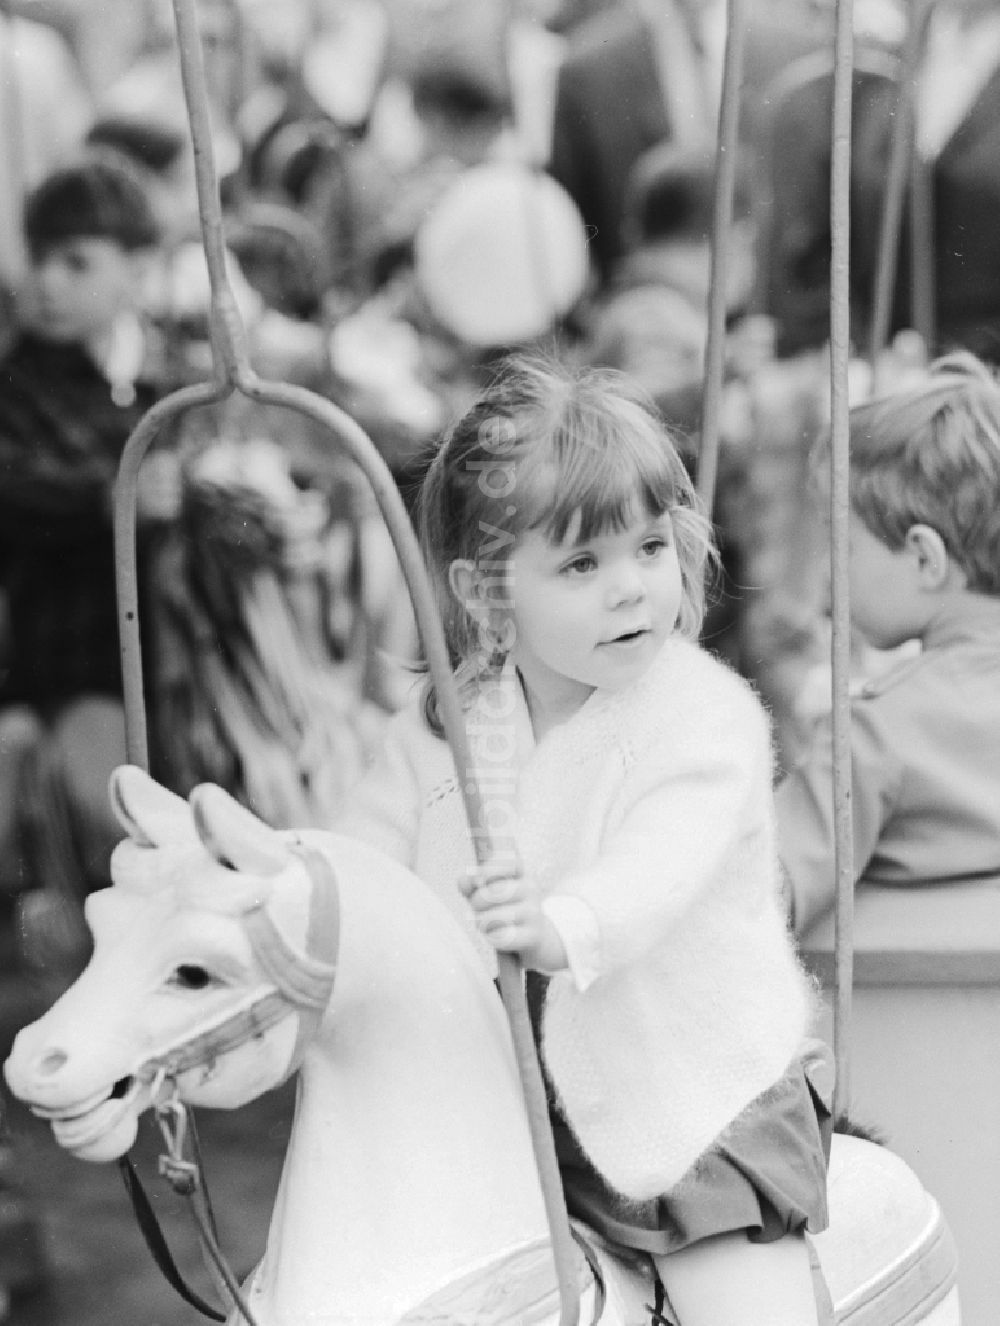 Berlin: Ein kleines Mädchen auf einem Karussellpferd in Berlin, der ehemaligen Hauptstadt der DDR, Deutsche Demokratische Republik